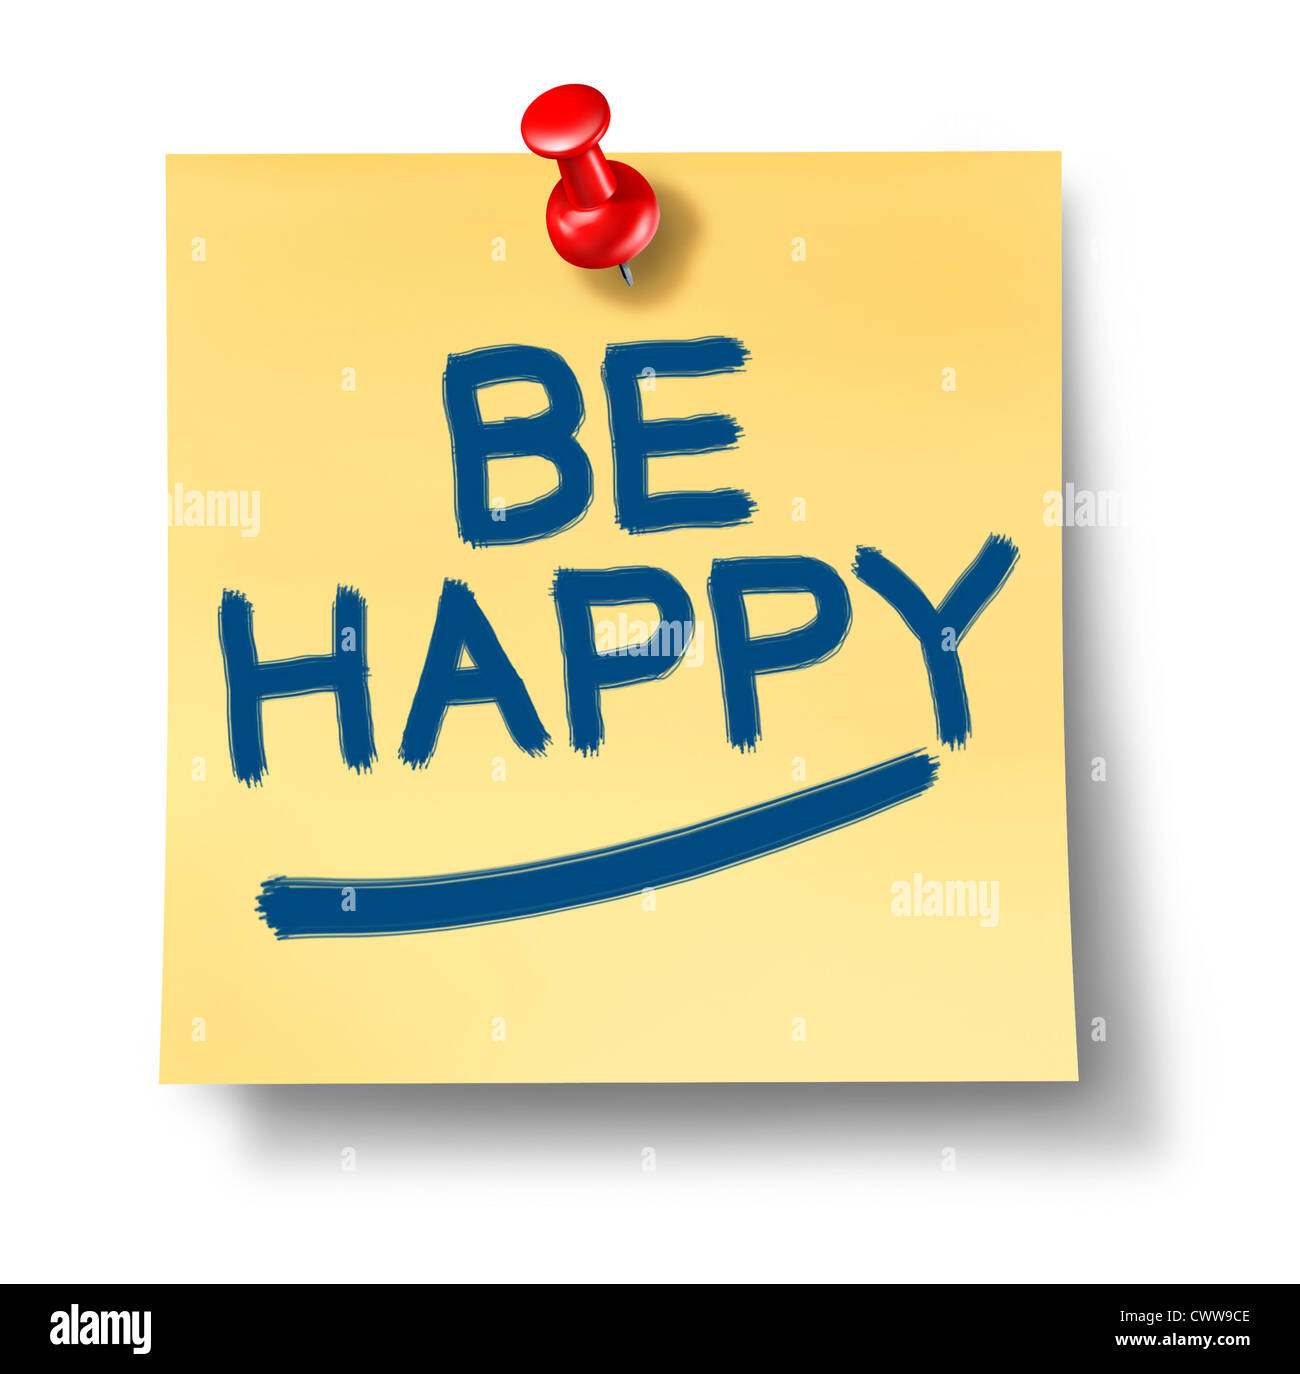 Happy gelb Büro Hinweis Erinnerung mit einer roten Daumen Wende stellvertretend für das positive Konzept von Glück und Freude im Leben und Geschäft und Kampf gegen Depression und Traurigkeit durch Blick auf die helle Seite der Dinge. Stockfoto